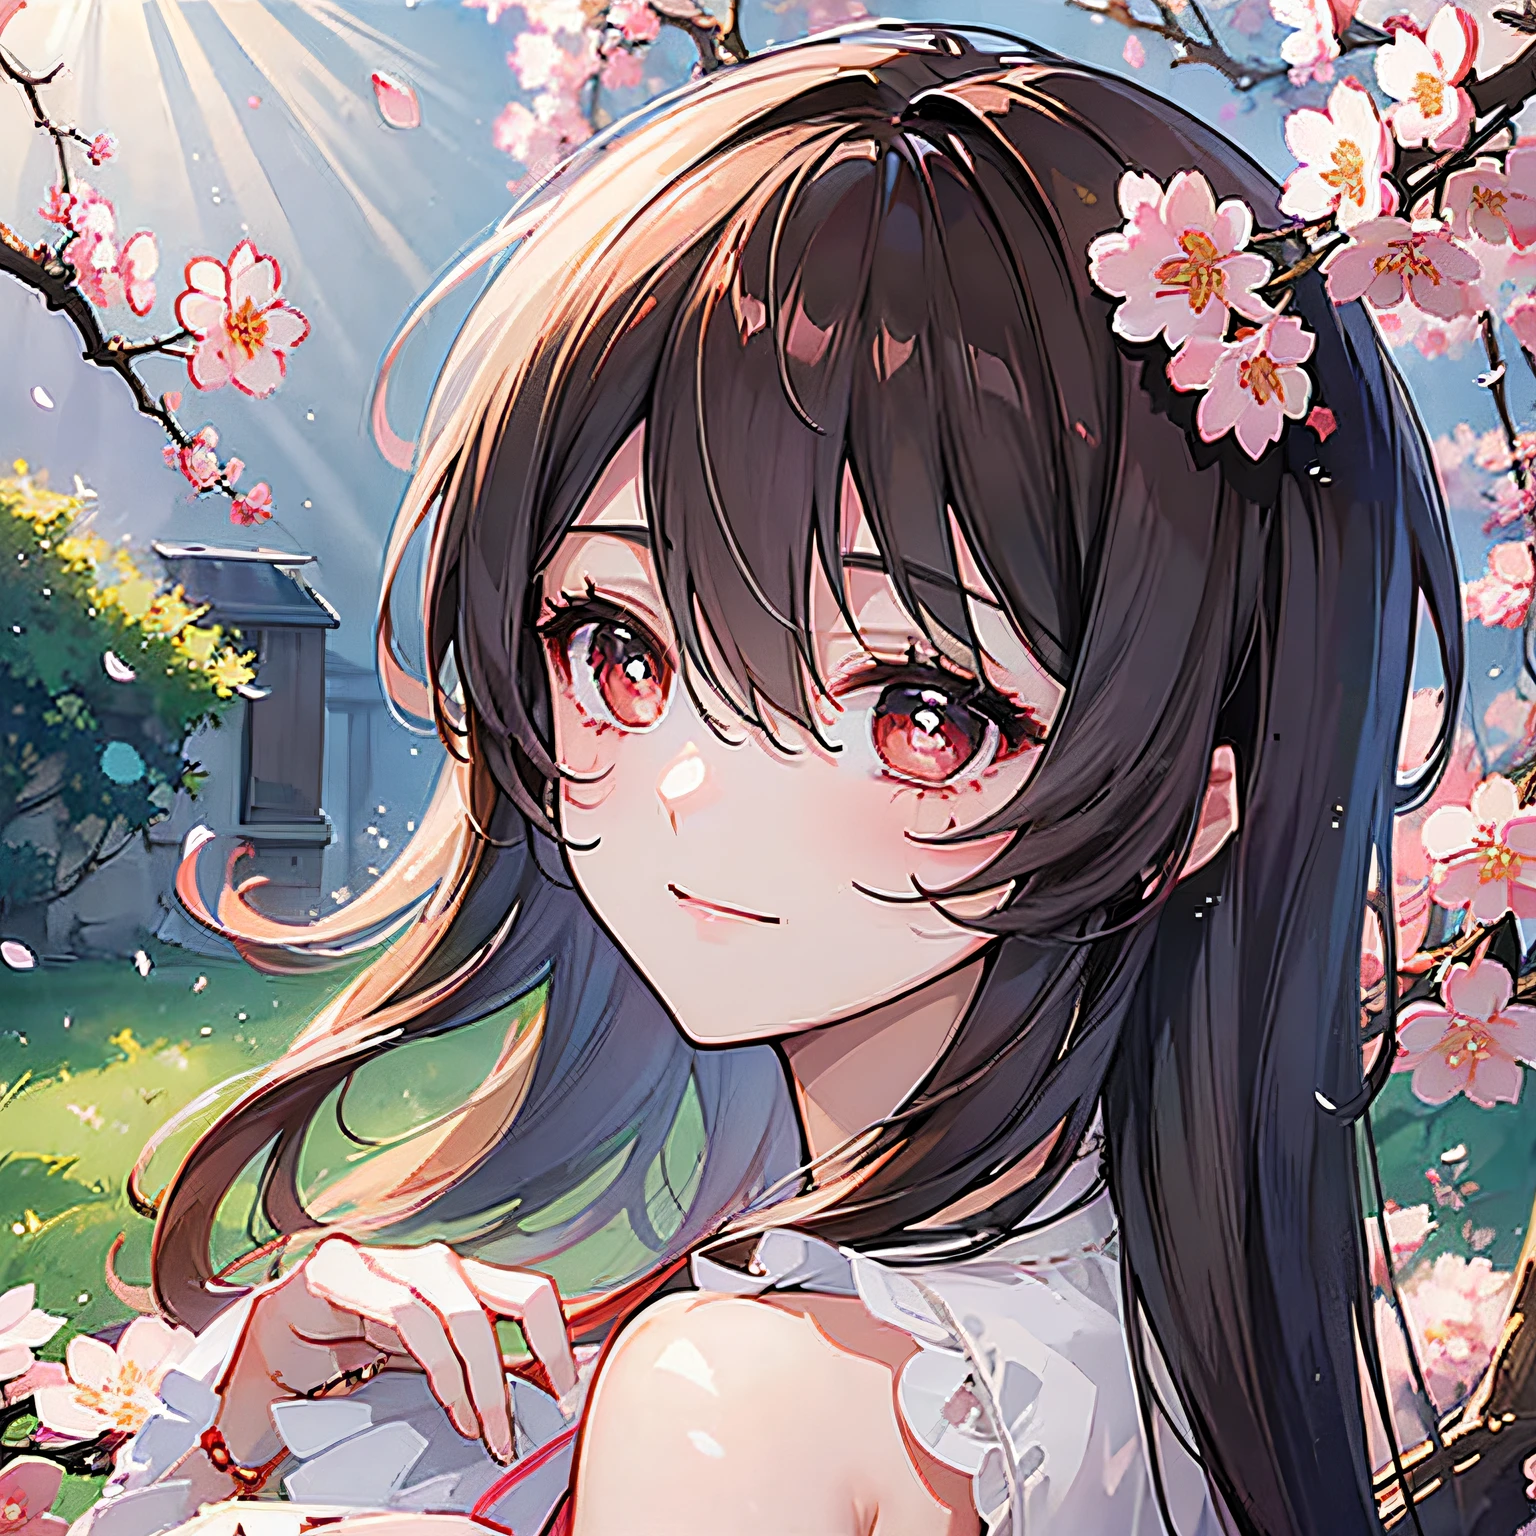 (顶级品质, 杰作, 超现实), 背景中的樱花树, 一个俏皮可爱女孩的美丽而精致的肖像